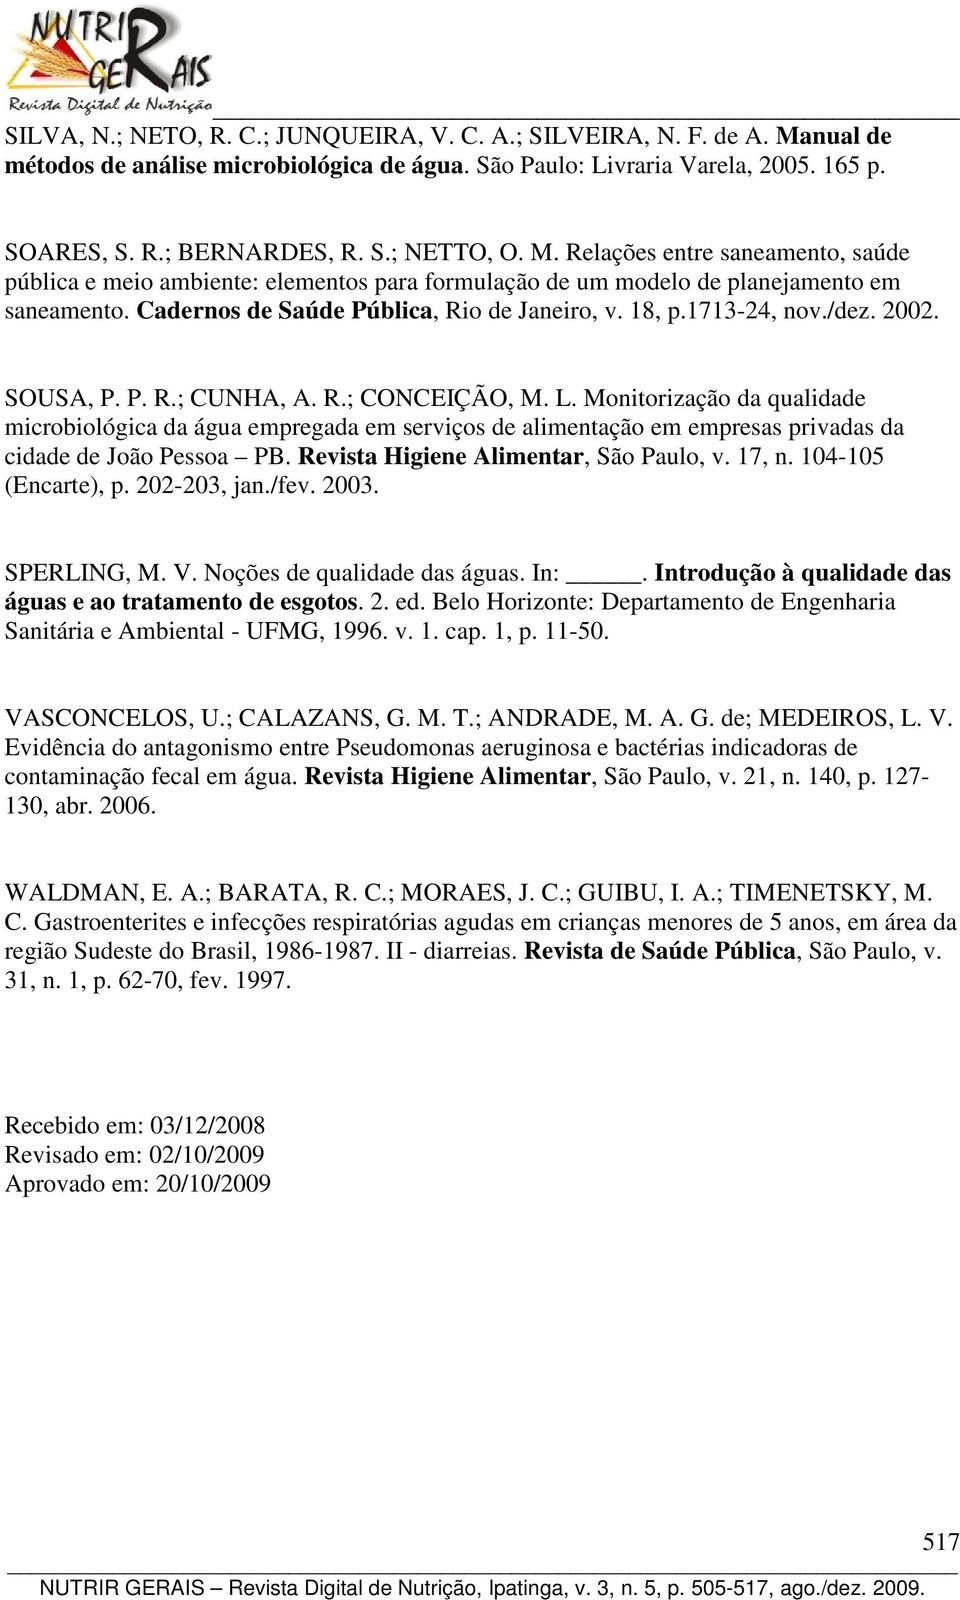 /dez. 2002. SOUSA, P. P. R.; CUNHA, A. R.; CONCEIÇÃO, M. L. Monitorização da qualidade microbiológica da água empregada em serviços de alimentação em empresas privadas da cidade de João Pessoa PB.